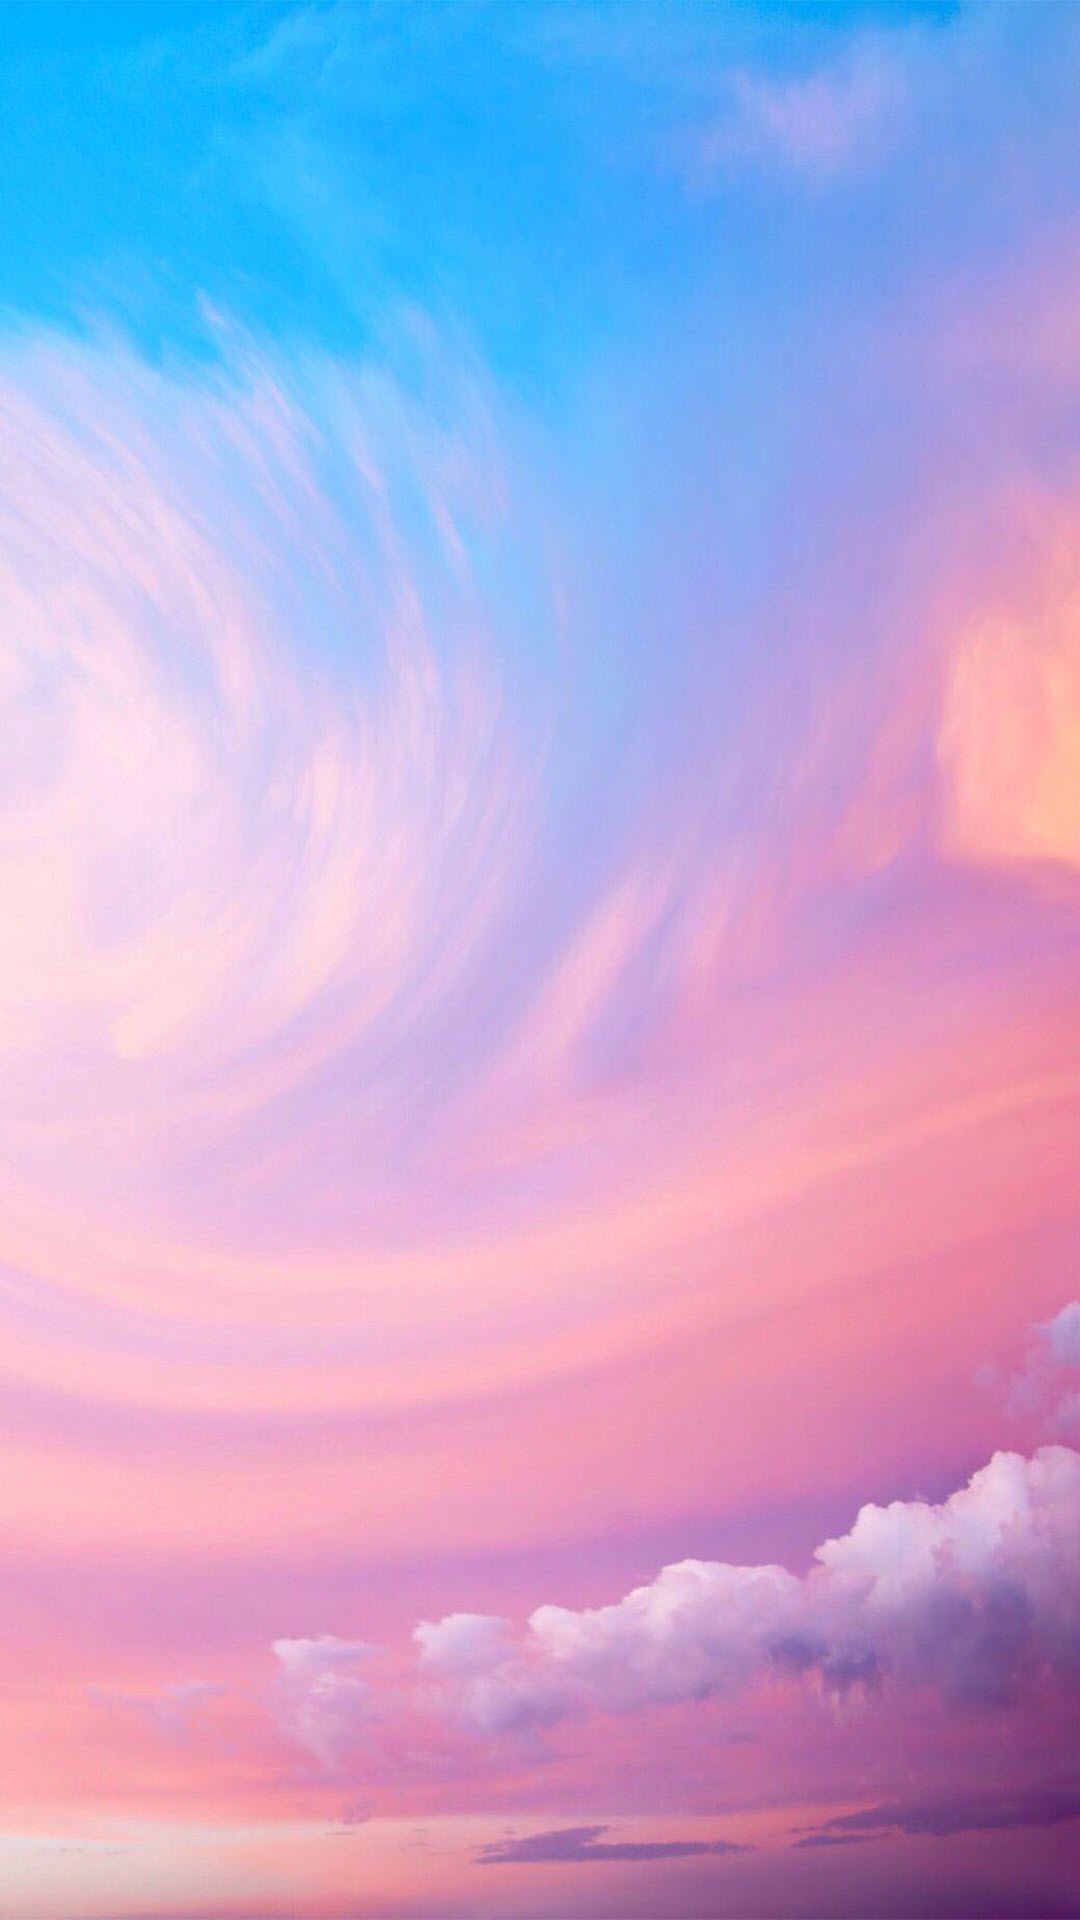 Hình nền bầu trời màu hồng: Một bức hình nền đầy mơ mộng với bầu trời màu hồng tuyệt đẹp chắc chắn sẽ làm cho bạn cảm thấy thư thái sau một ngày dài căng thẳng. Những tia nắng lung linh kết hợp với màu hồng nhẹ nhàng giúp cho tâm trạng bạn trở nên ấm áp và yên bình.